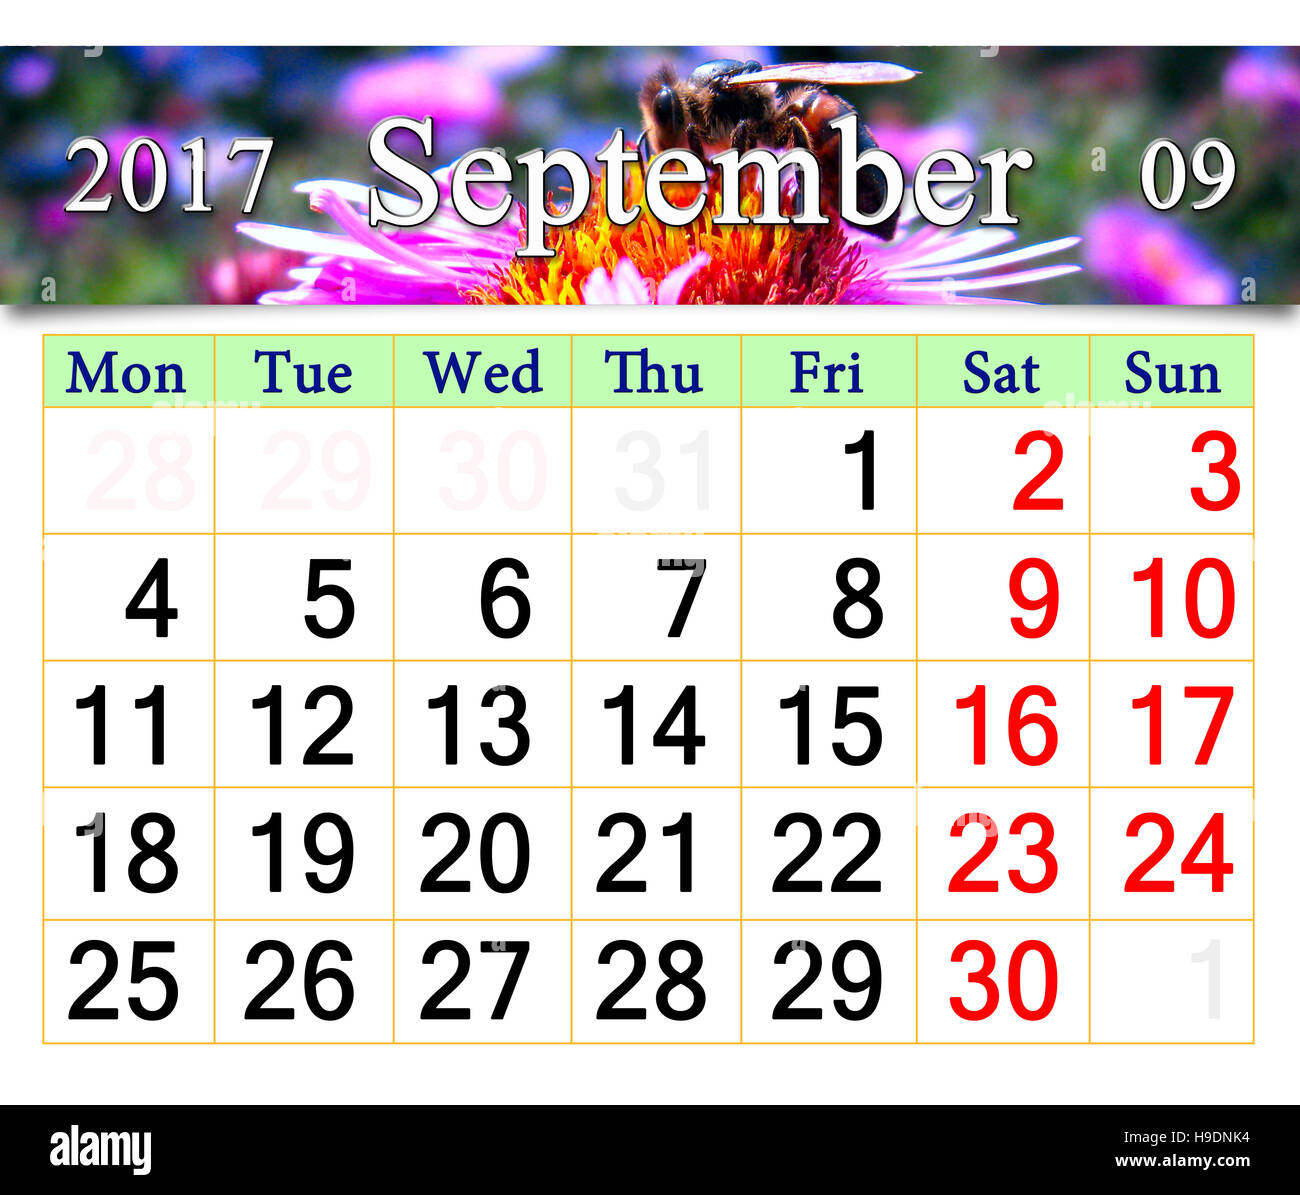 Calendrier pour 2017 Septembre avec l'image du bee assis sur l'aster rose Banque D'Images